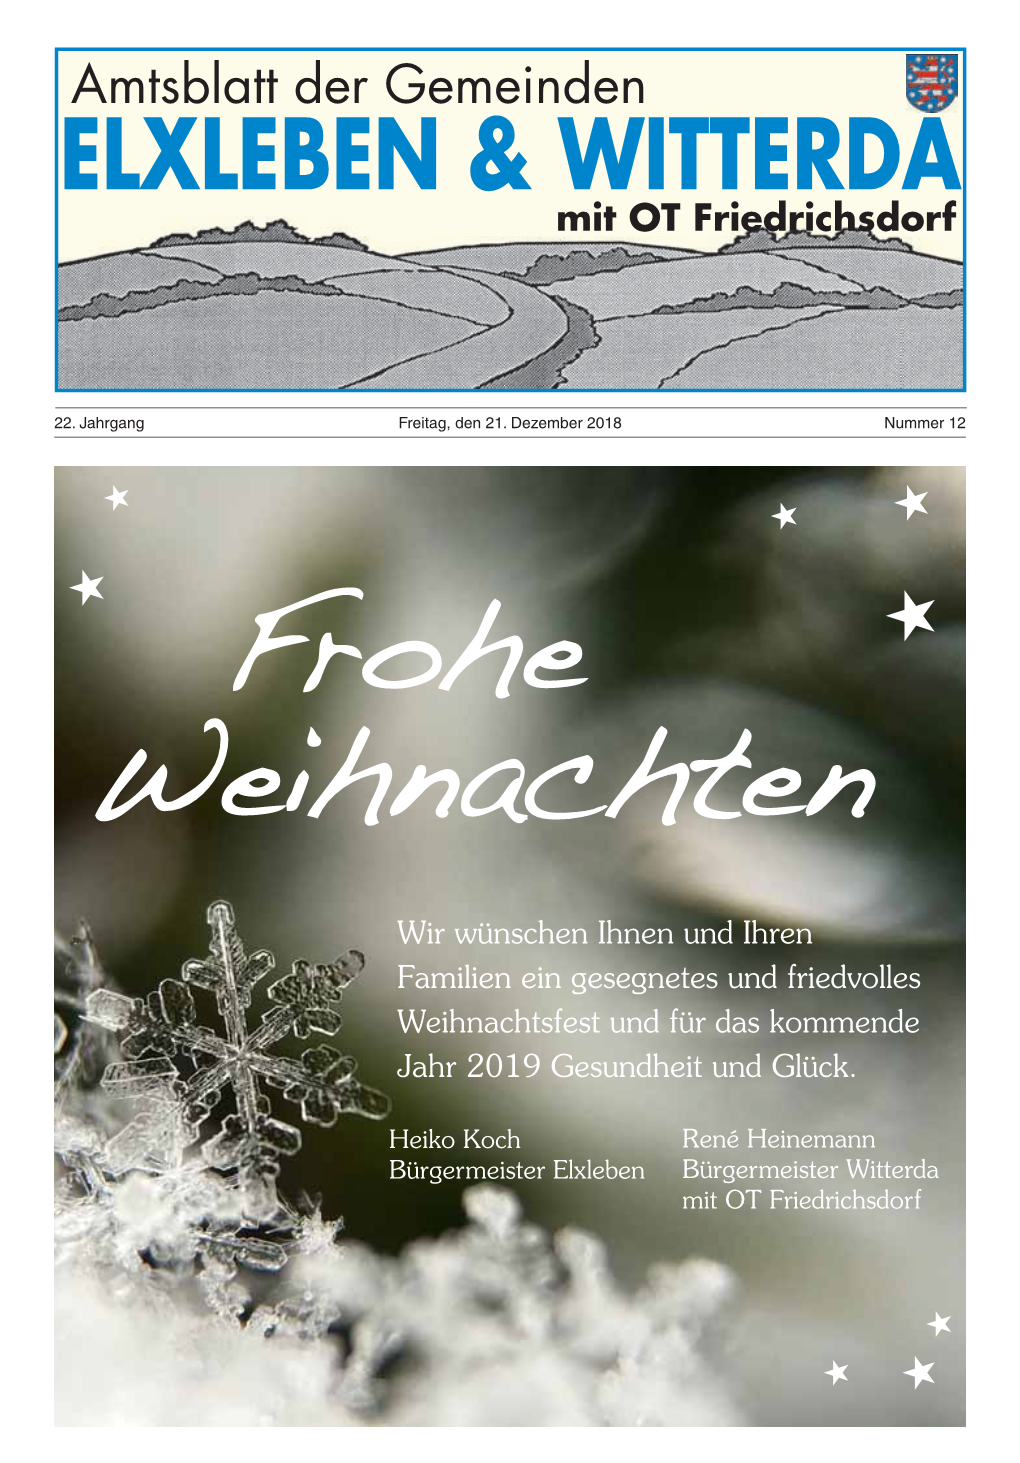 Amtsblatt Der Gemeinden ELXLEBEN & WITTERDA Mit OT Friedrichsdorf